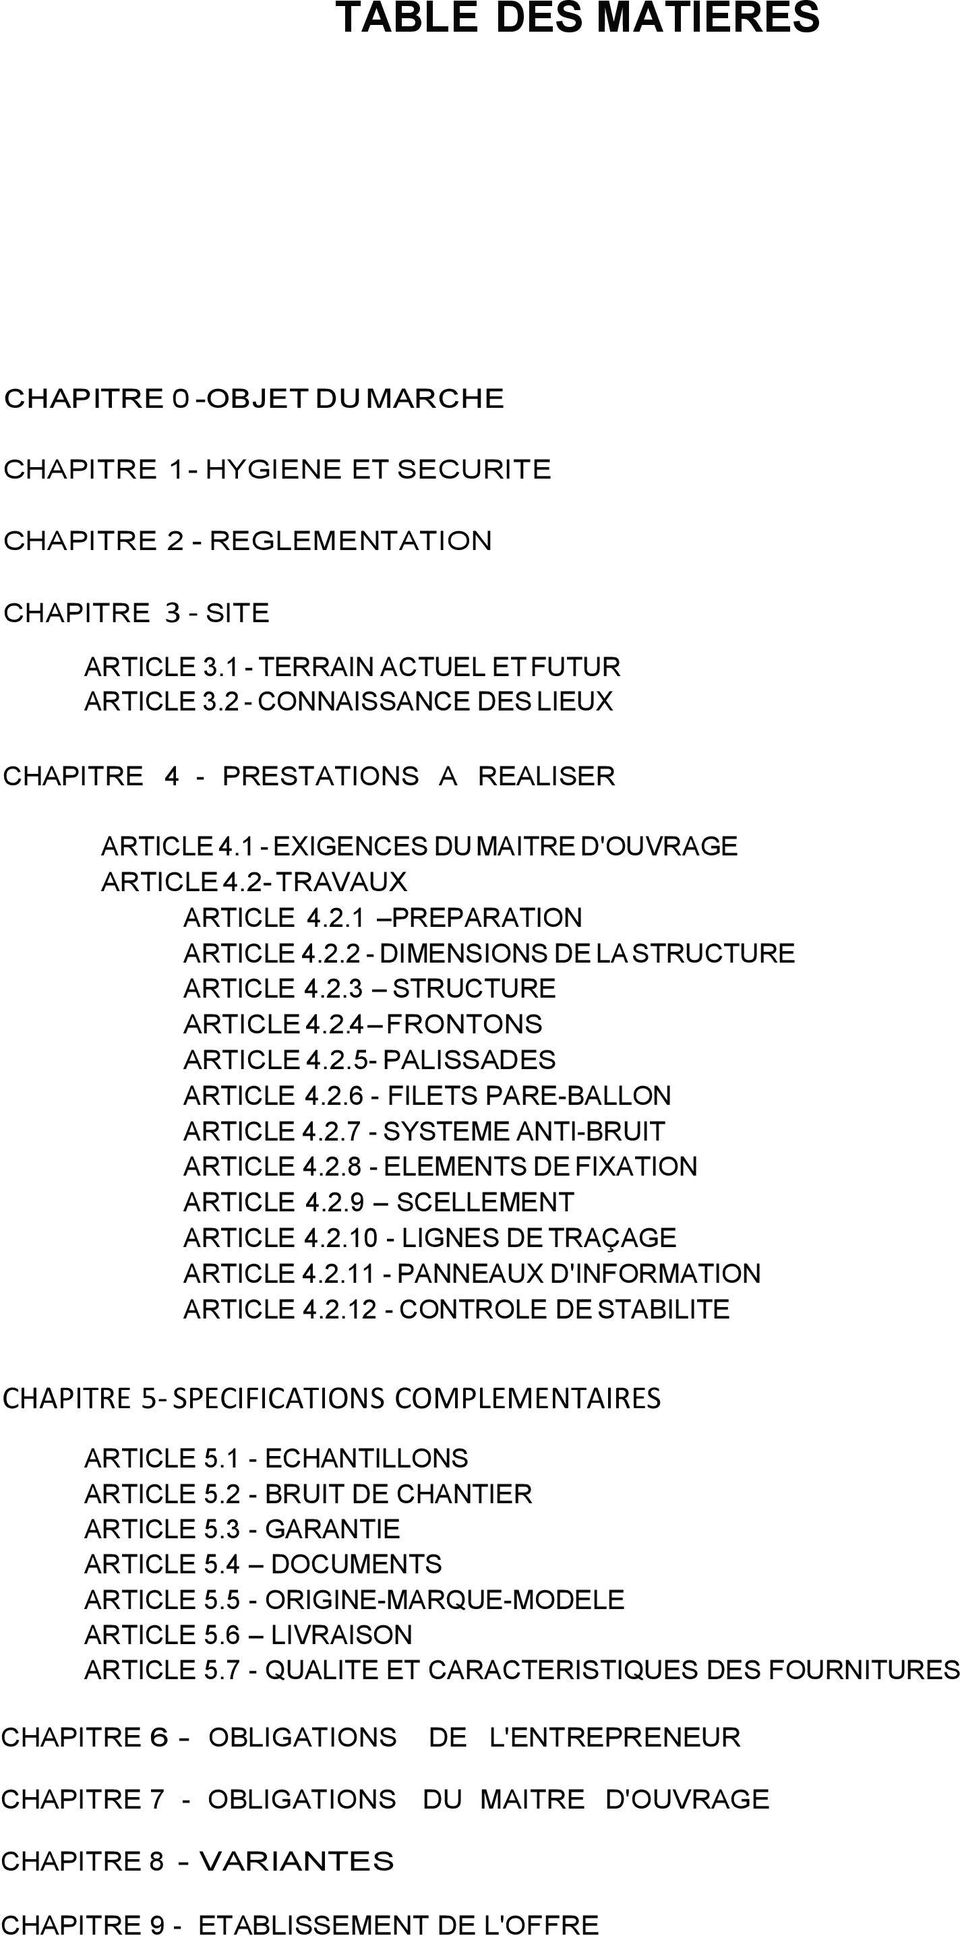 2.3 STRUCTURE ARTICLE 4.2.4 FRONTONS ARTICLE 4.2.5- PALISSADES ARTICLE 4.2.6 - FILETS PARE-BALLON ARTICLE 4.2.7 - SYSTEME ANTI-BRUIT ARTICLE 4.2.8 - ELEMENTS DE FIXATION ARTICLE 4.2.9 SCELLEMENT ARTICLE 4.